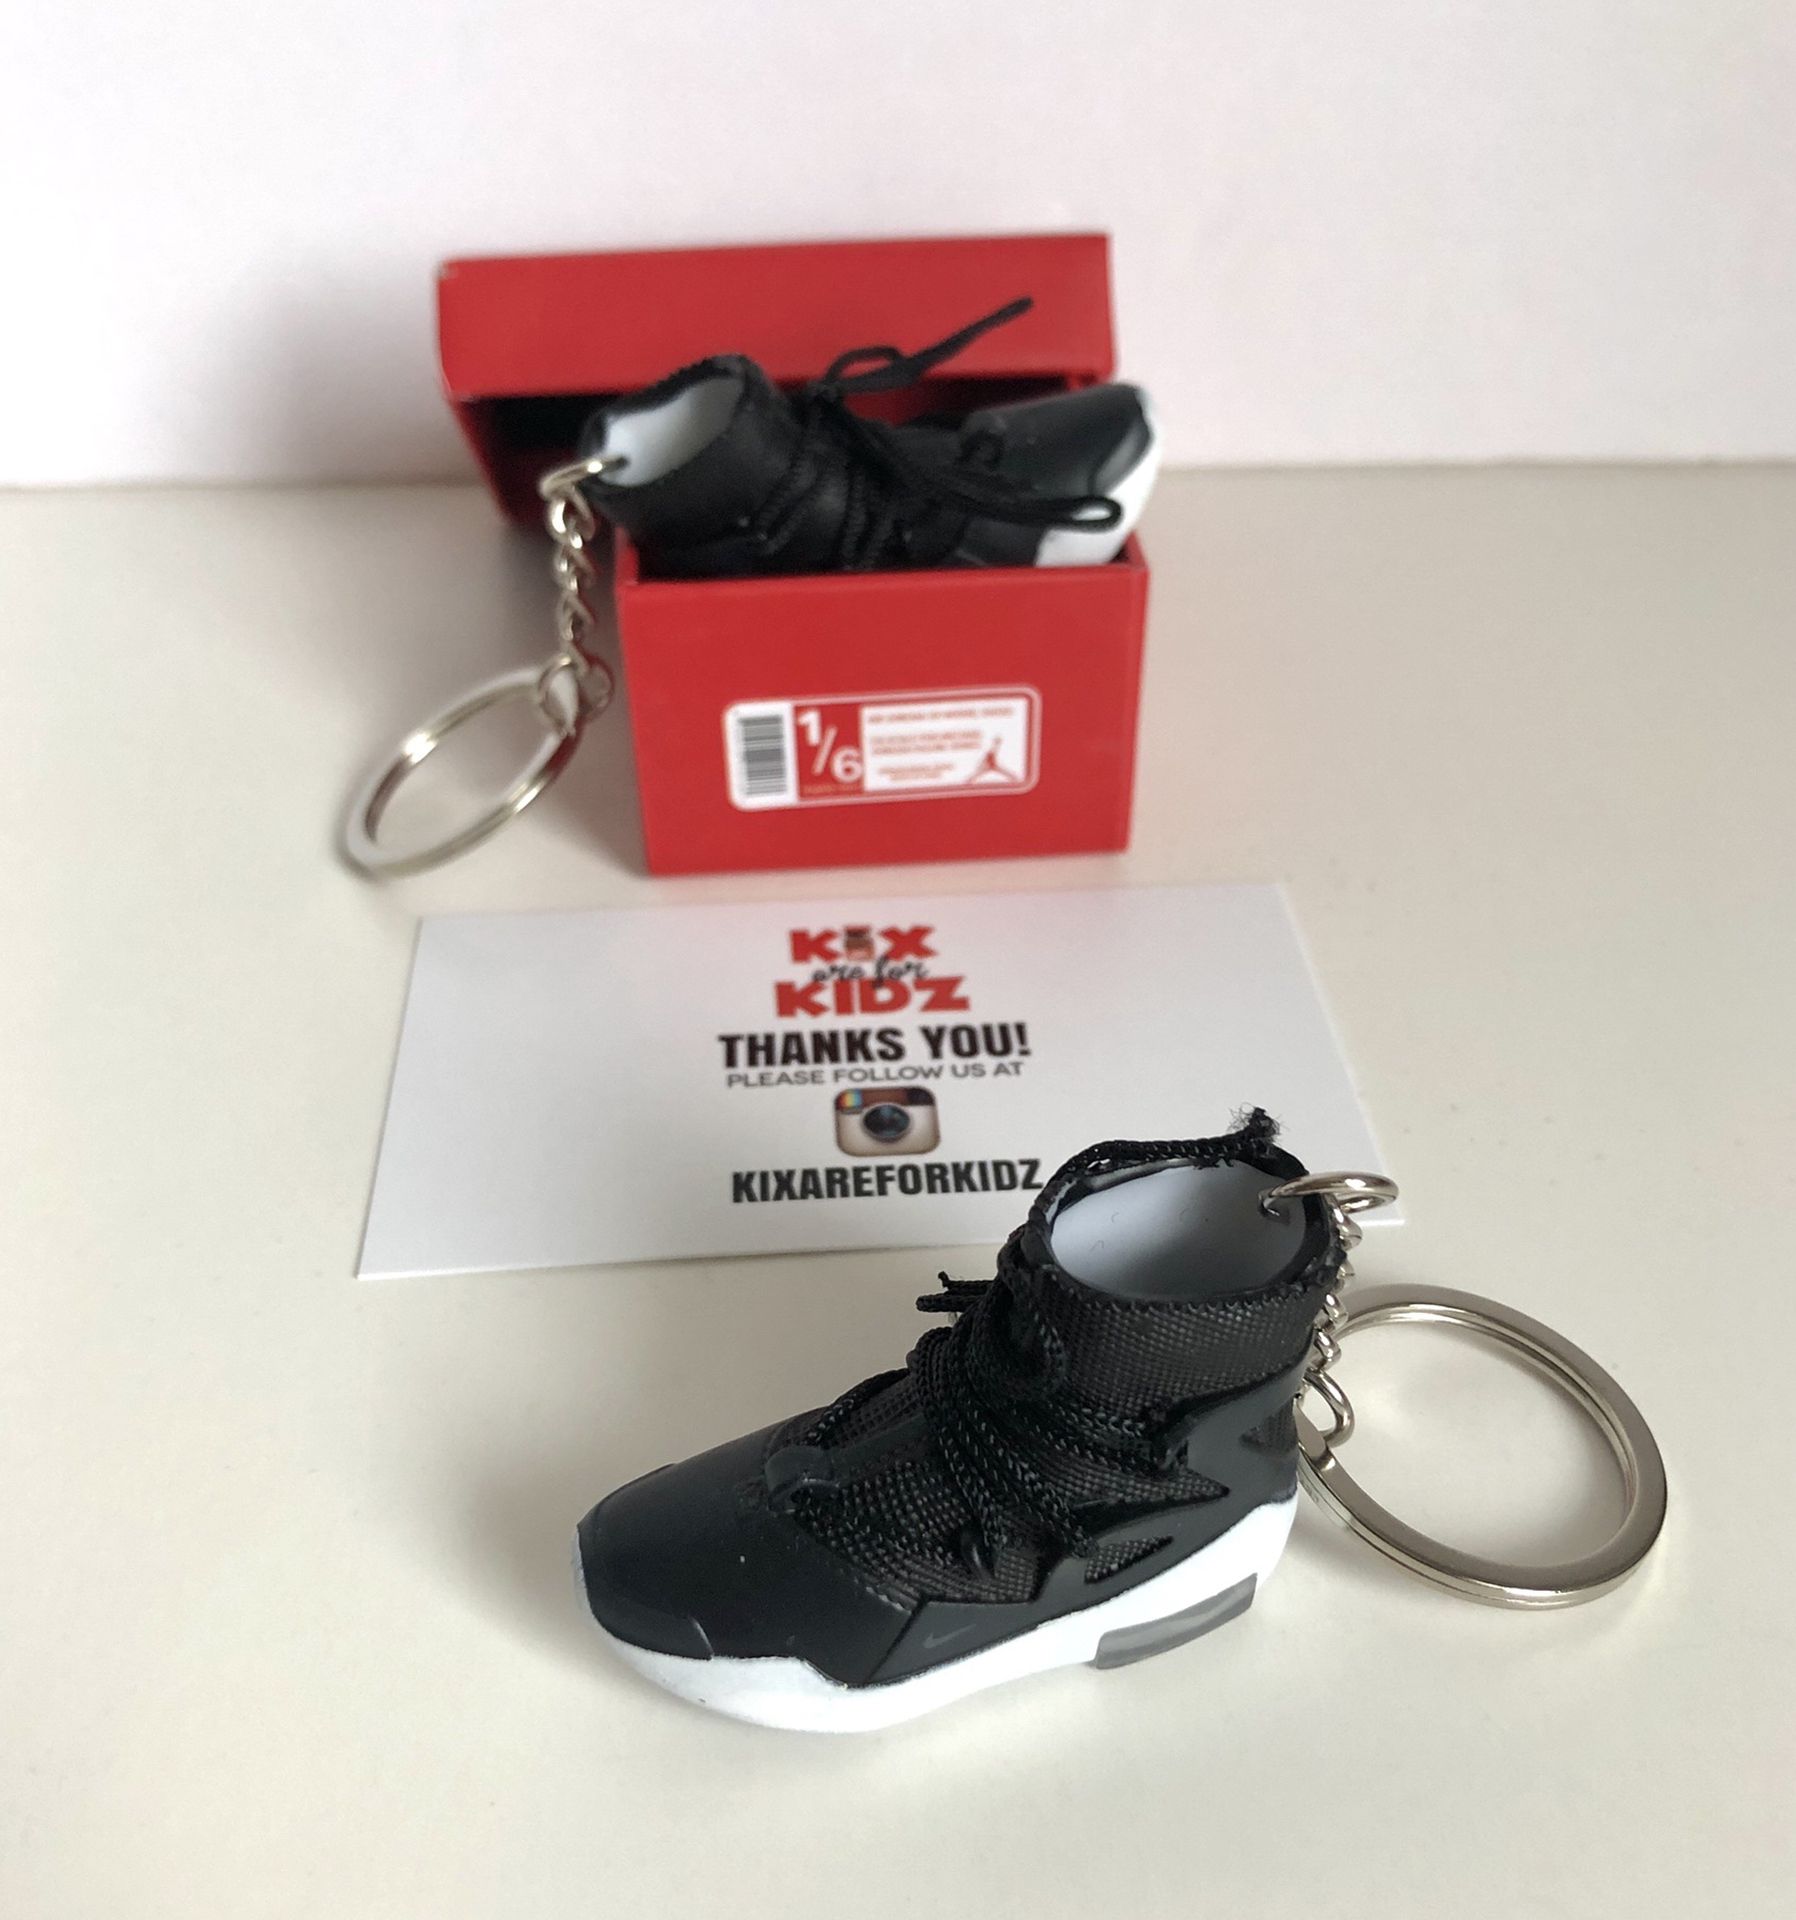 Fear Of God 1 Black 3D Mini Sneaker Keychain